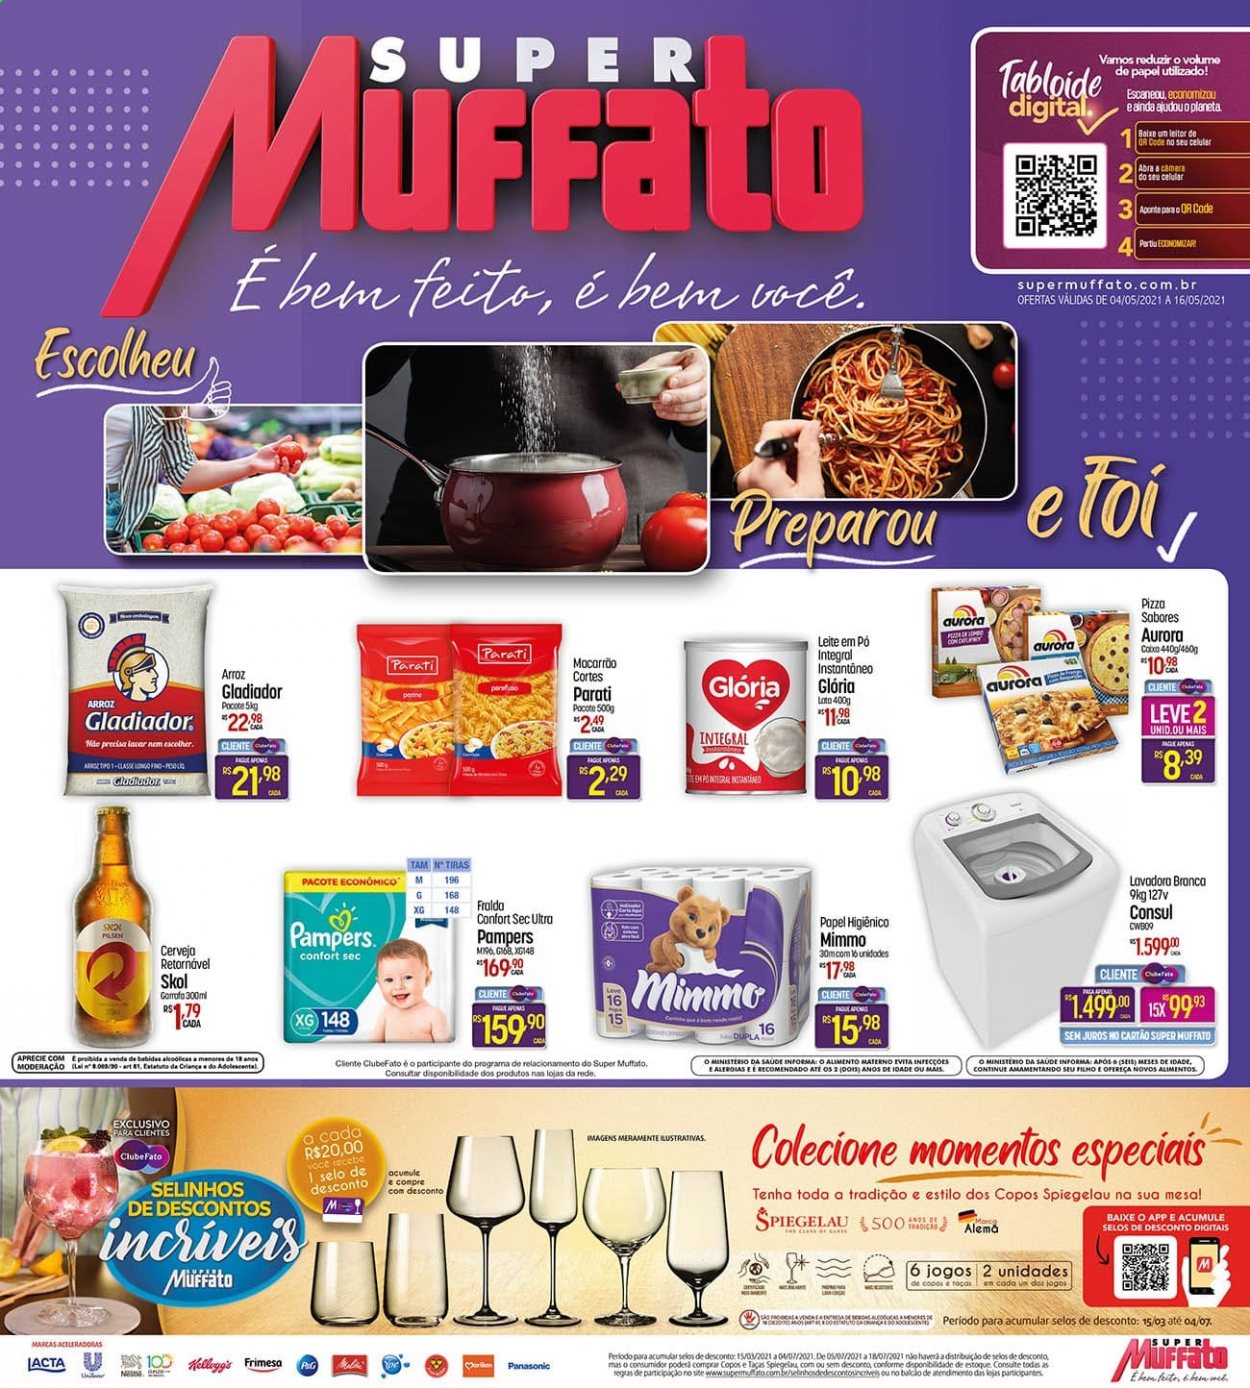 thumbnail - Folheto Super Muffato - 04/05/2021 - 16/05/2021 - Produtos em promoção - Skol, Panasonic, pizza, penne, Aurora, leite em pó, arroz, macarrão, Pampers. Página 1.